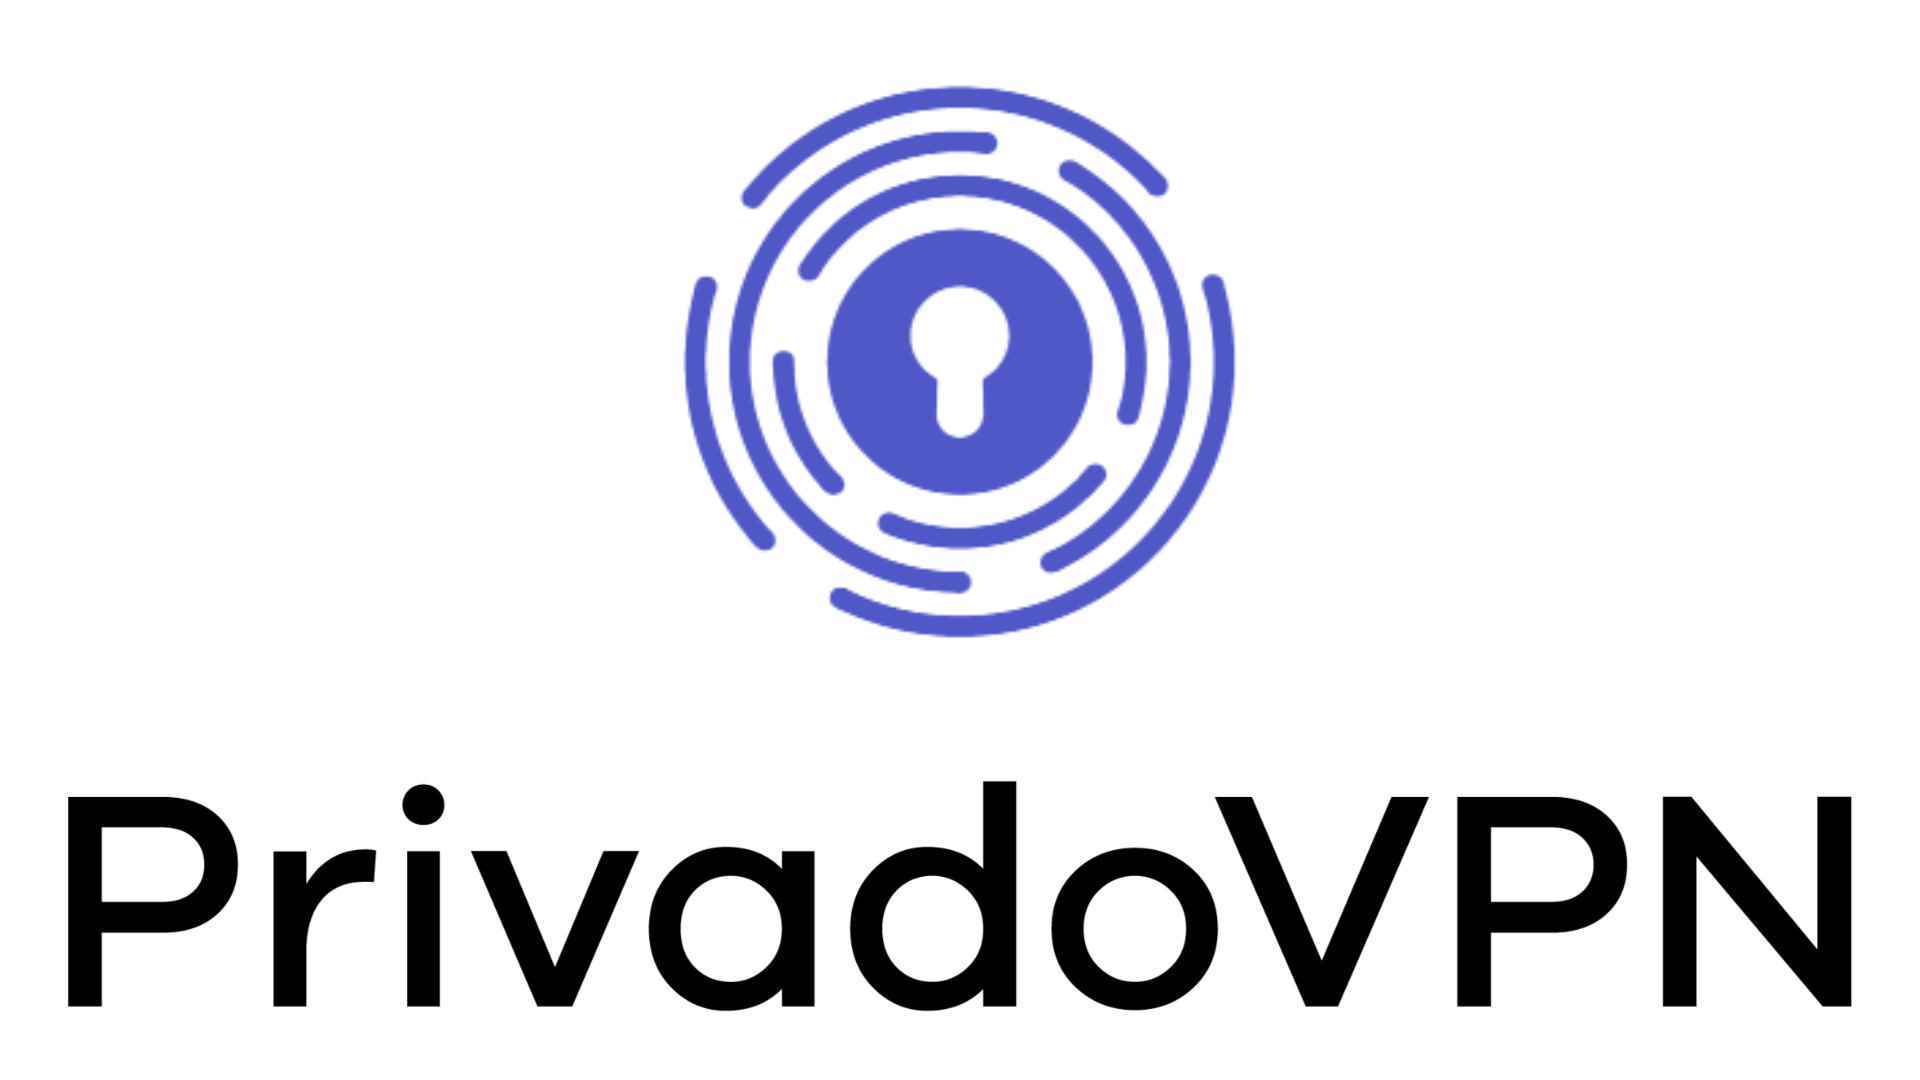 Ücretsiz VPN denemesi: PrivadoVPN.  Resim şirket logosunu gösterir.